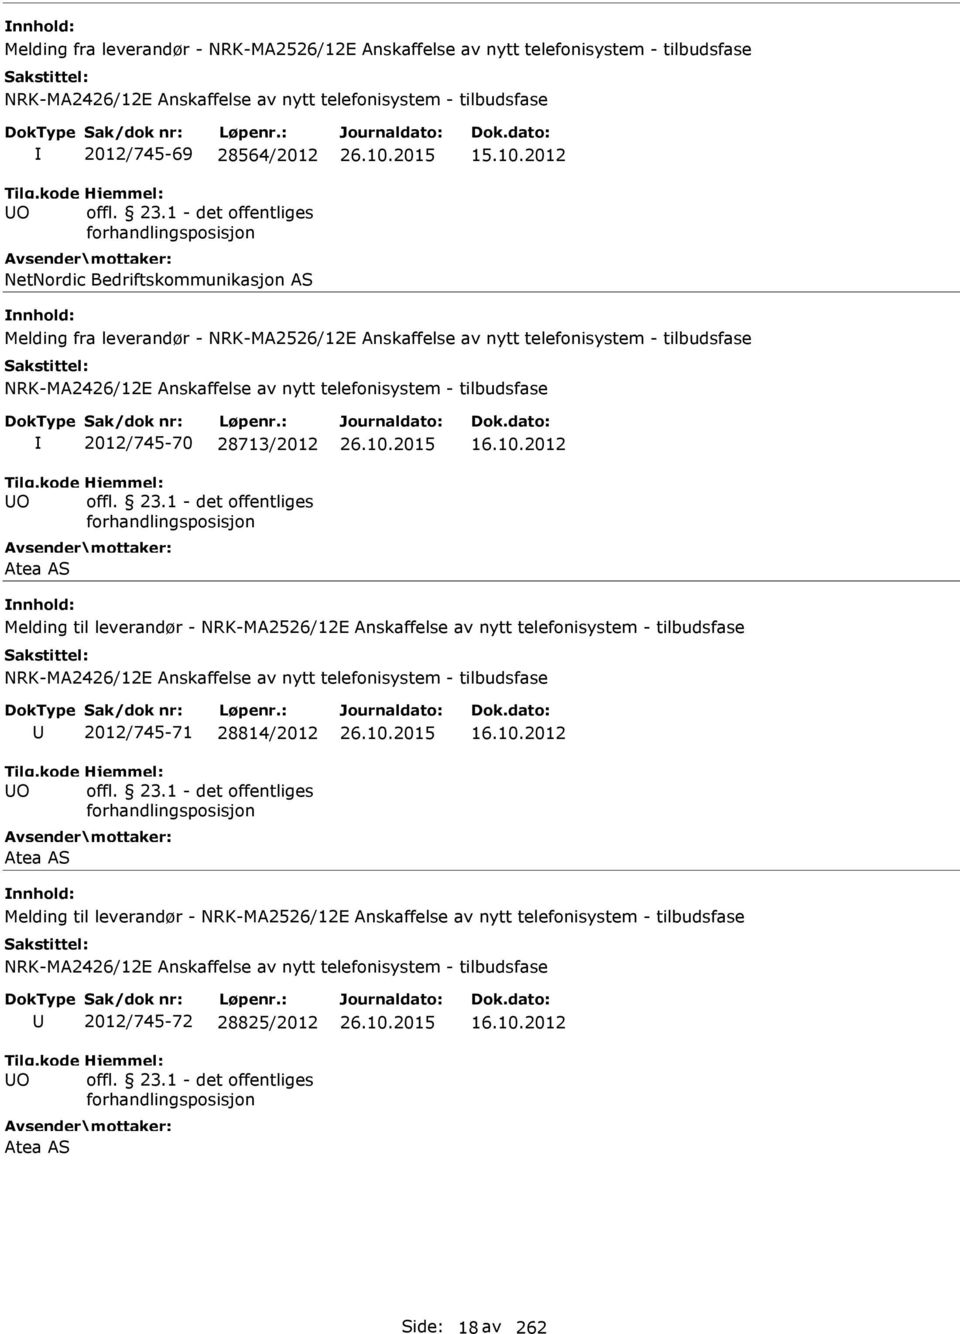 2012 Melding fra leverandør - NRK-MA2526/12E Anskaffelse av nytt telefonisystem - tilbudsfase O 2012/745-70 28713/2012 Atea AS 16.10.